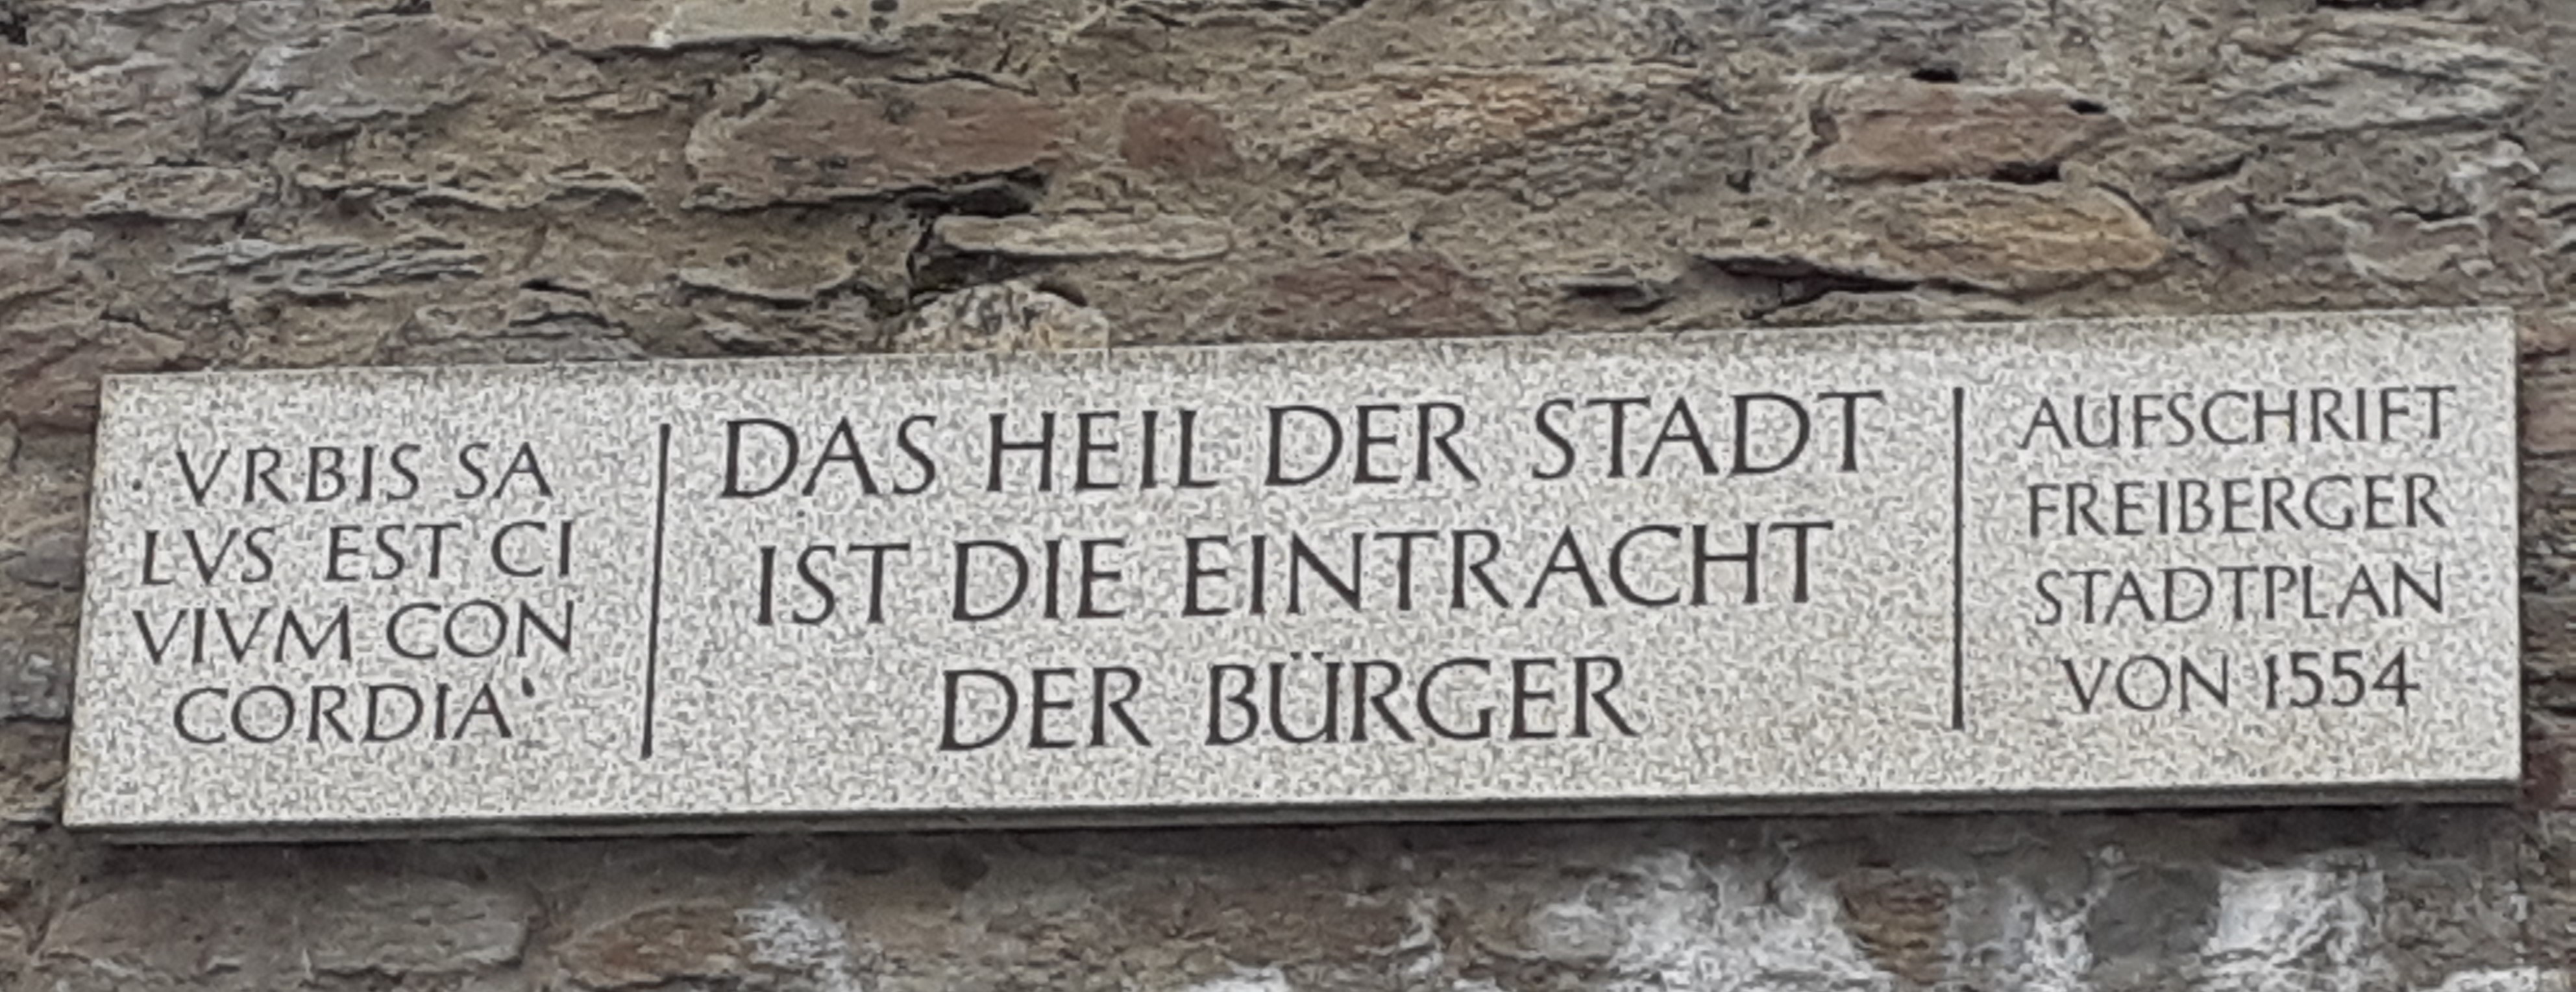 Inschrift an der Stadtmauer, Einfahrt zum Parkhaus Fischerstraße, Schillerstraße, "Das Heil der Stadt ist die Eintracht der Bürger" 